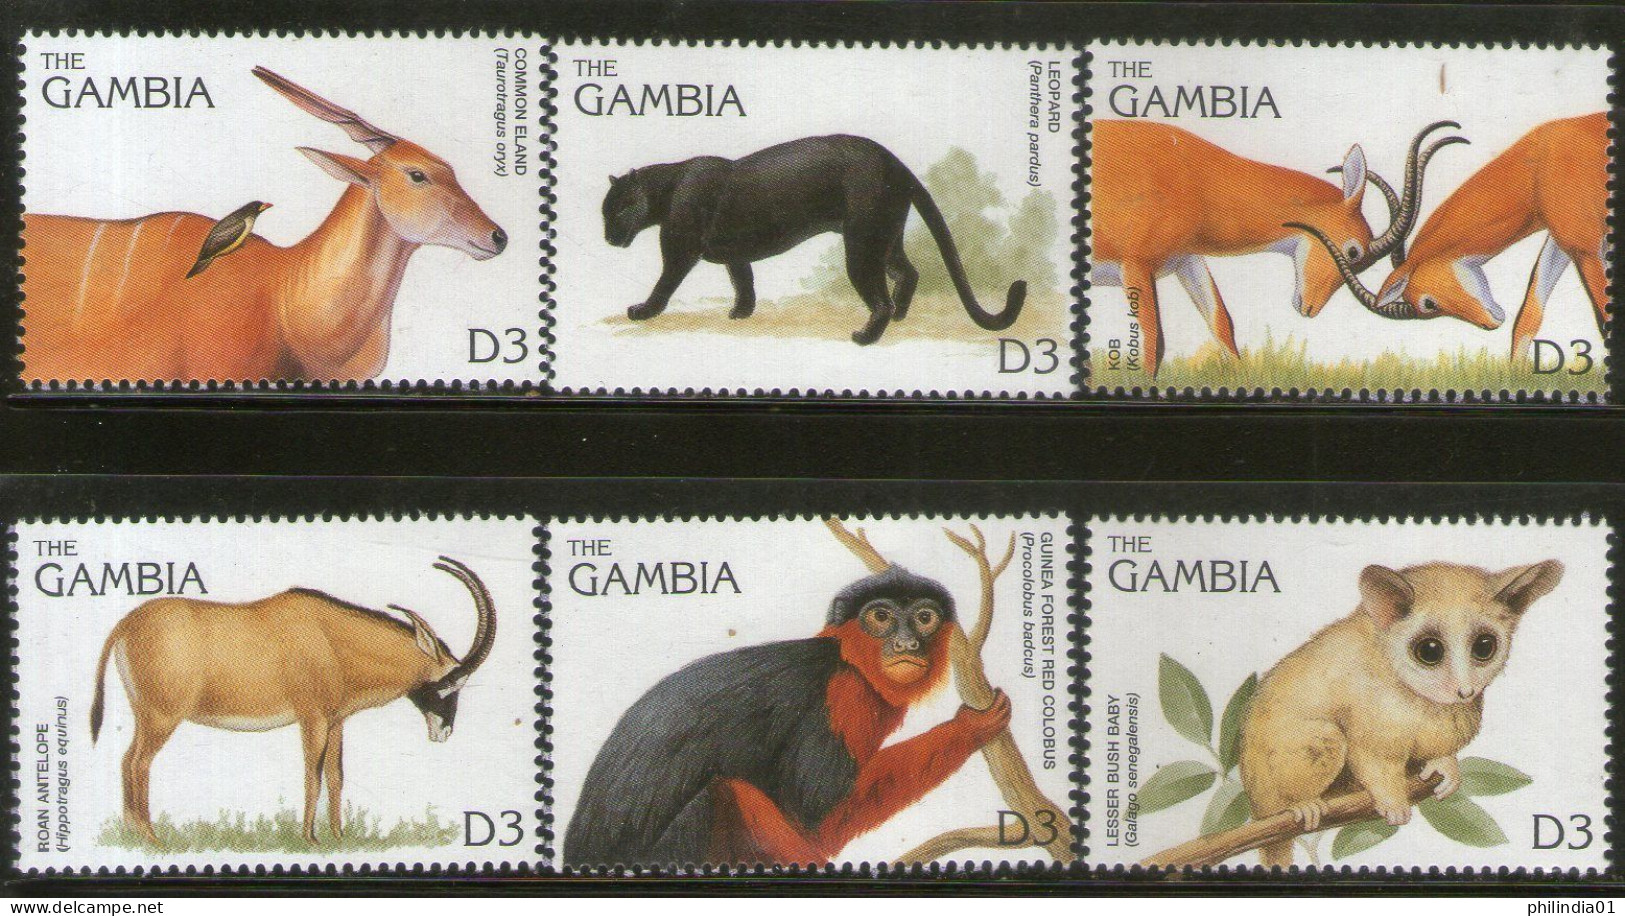 Gambia 1996 Monkey Mammals Wildlife Animals Sc 1740 6v MNH # 807 - Monkeys